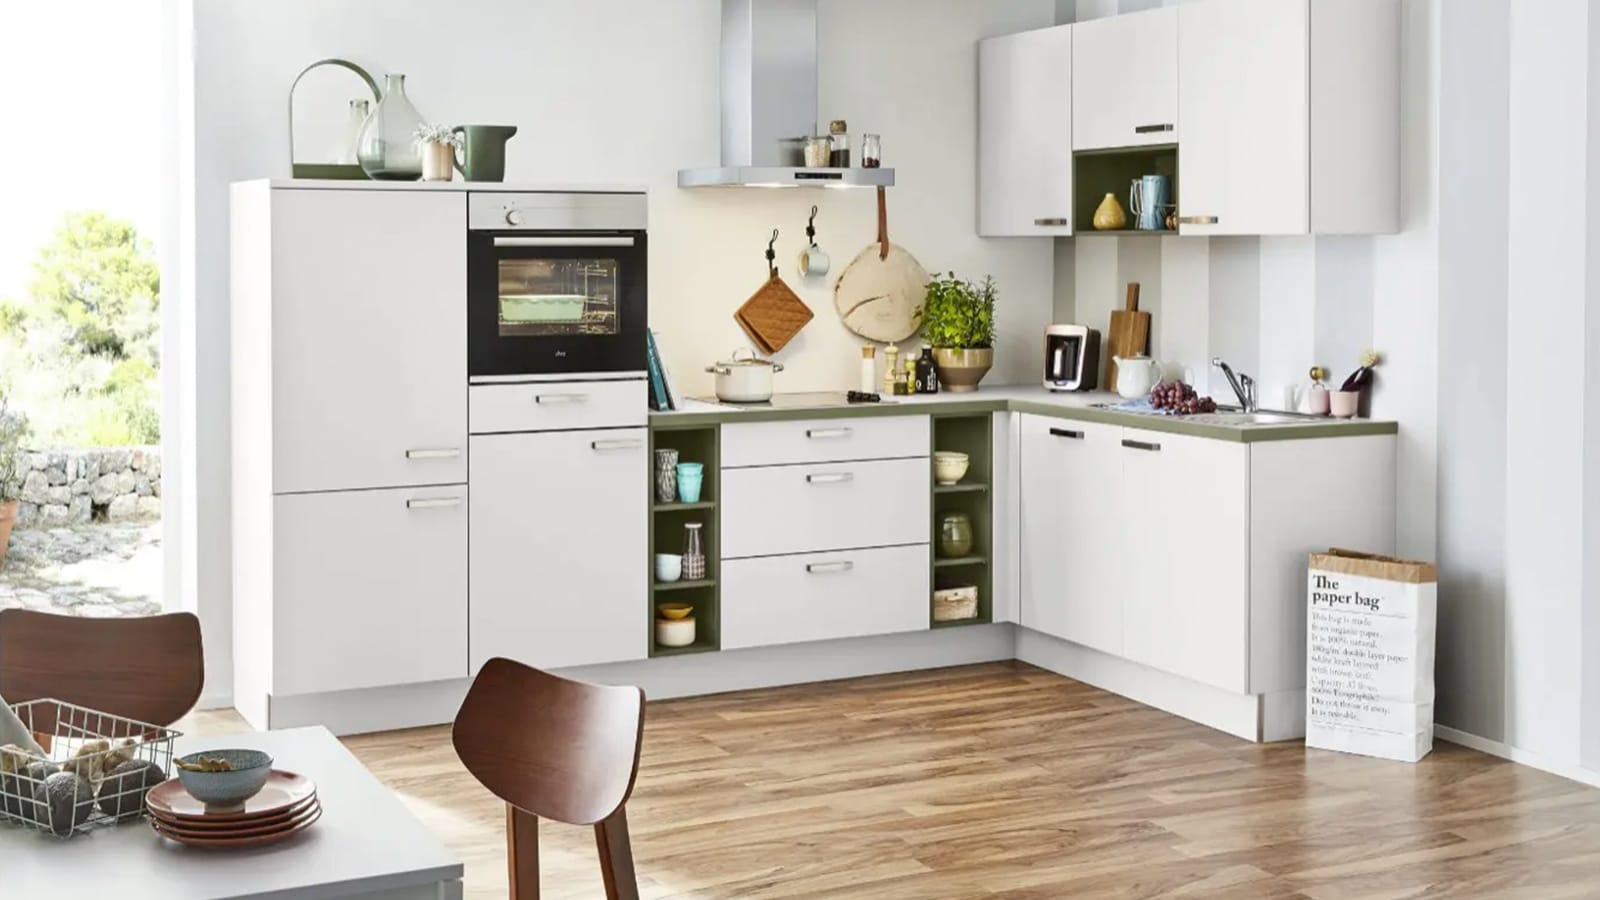 Eckküche - Möbel und Home KA Company olive in 40.100 weiß